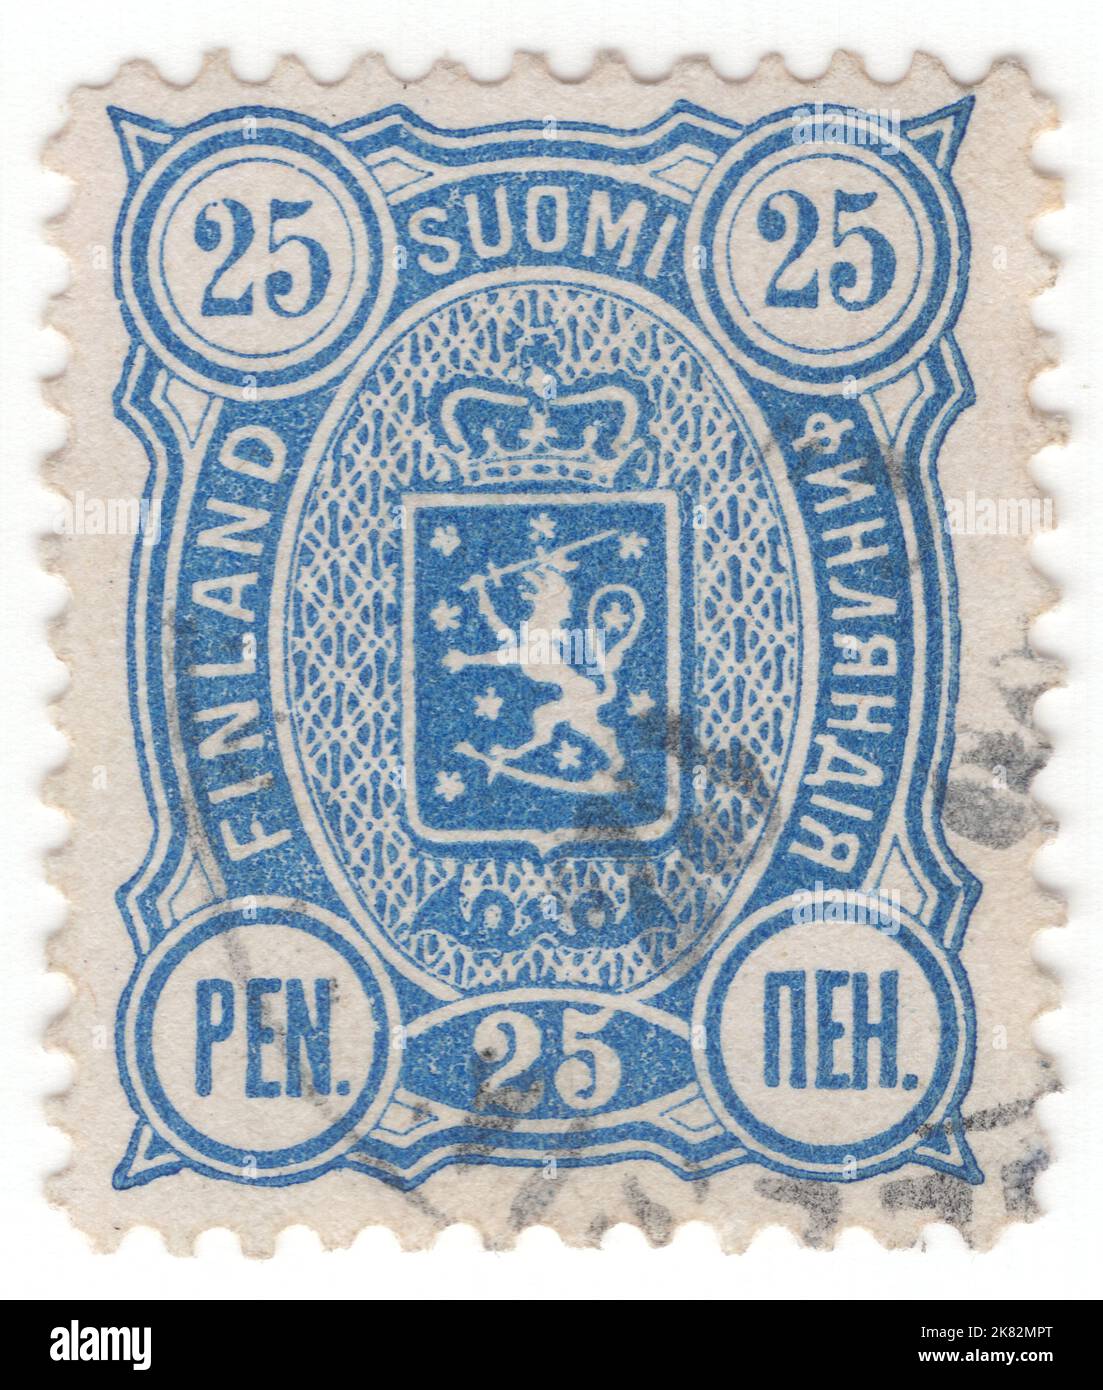 FINNLAND - 1891: Eine penni-ultramarine Briefmarke aus dem Jahr 25 mit Wappen und Posthörnern in ovalem Rahmen Stockfoto